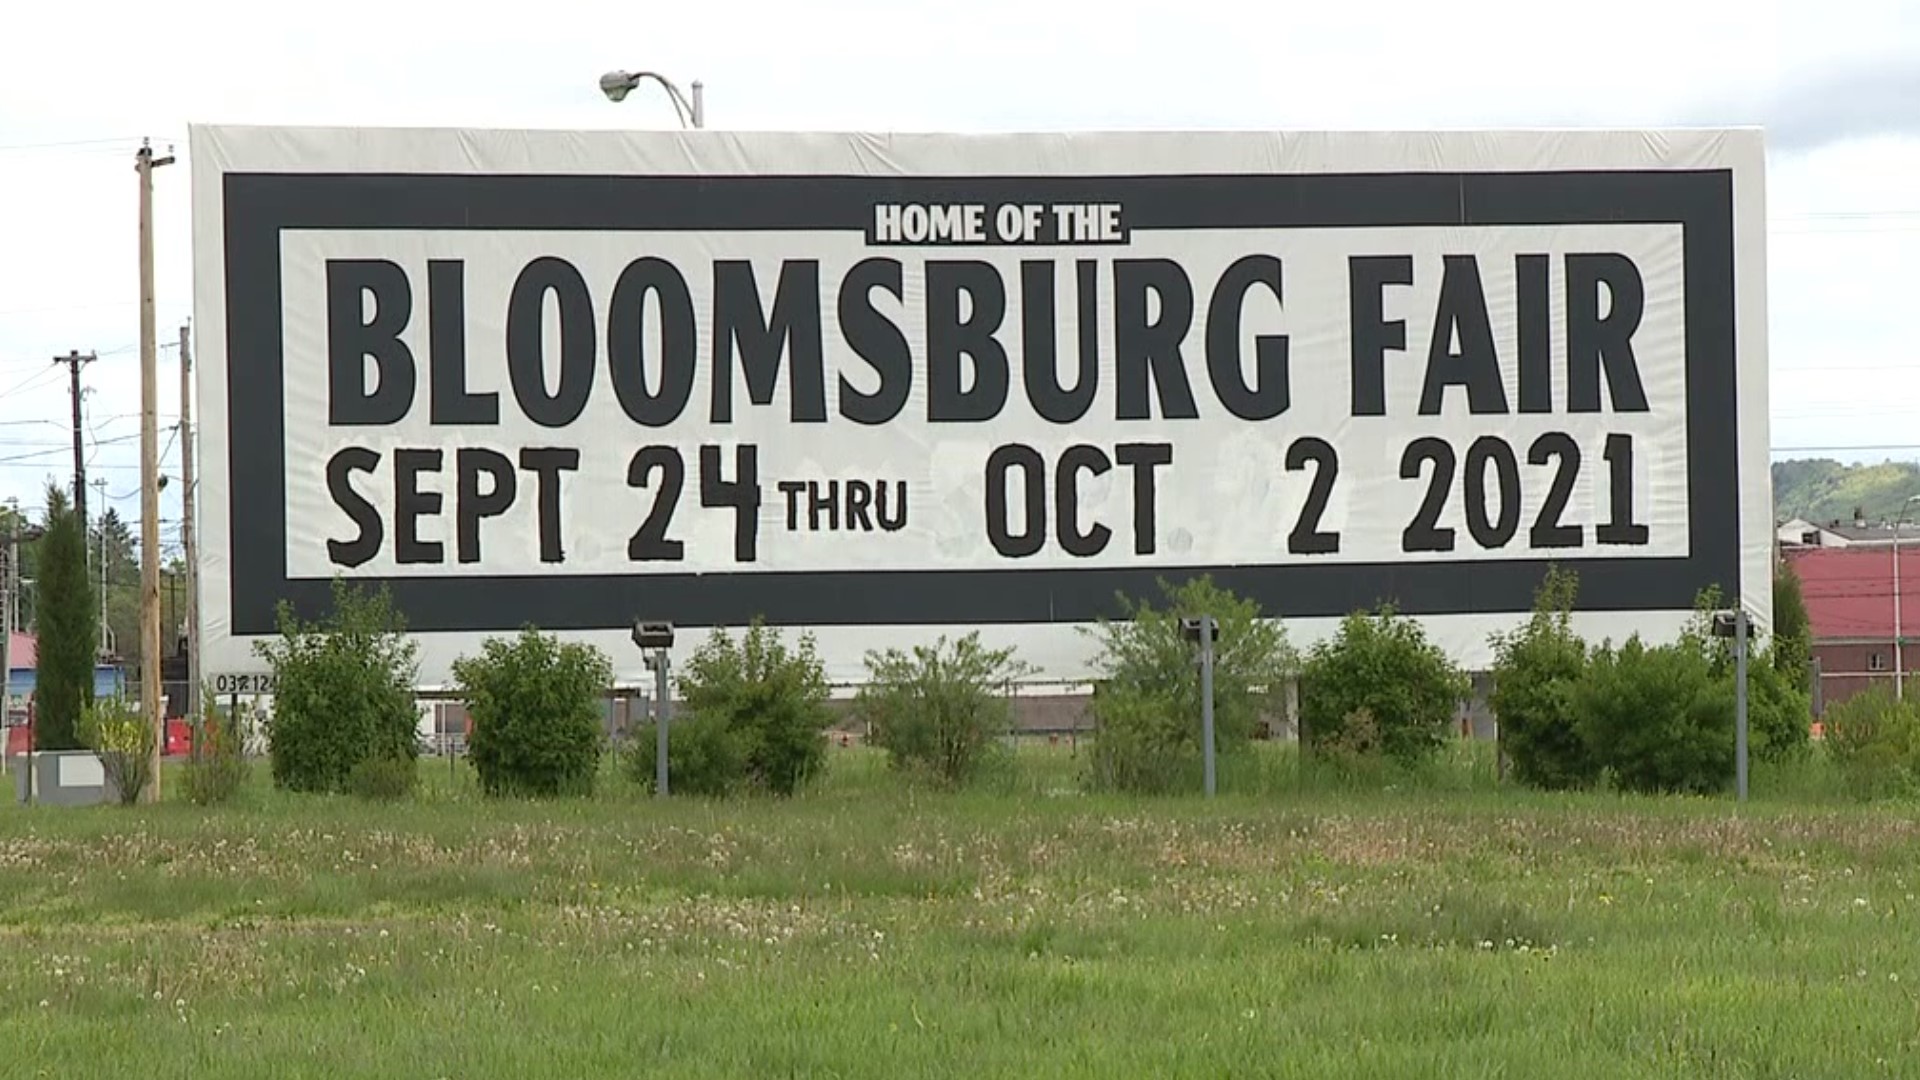 Bloomsburg Fair returning at full capacity in 2021